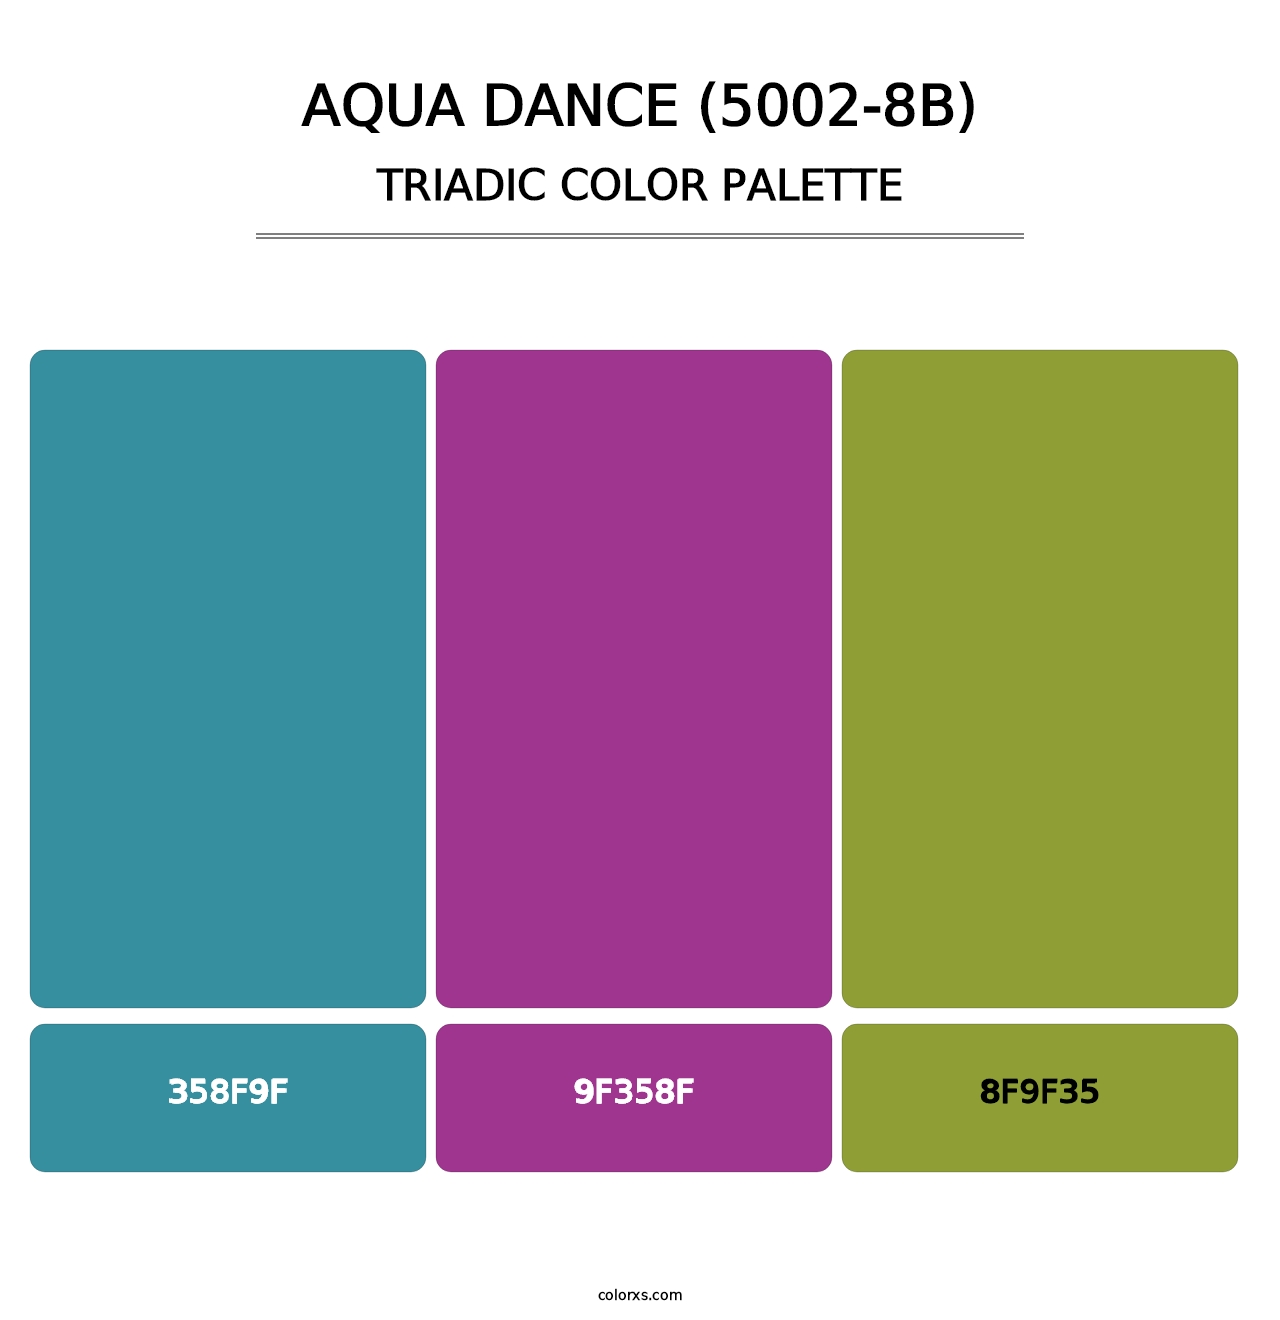 Aqua Dance (5002-8B) - Triadic Color Palette